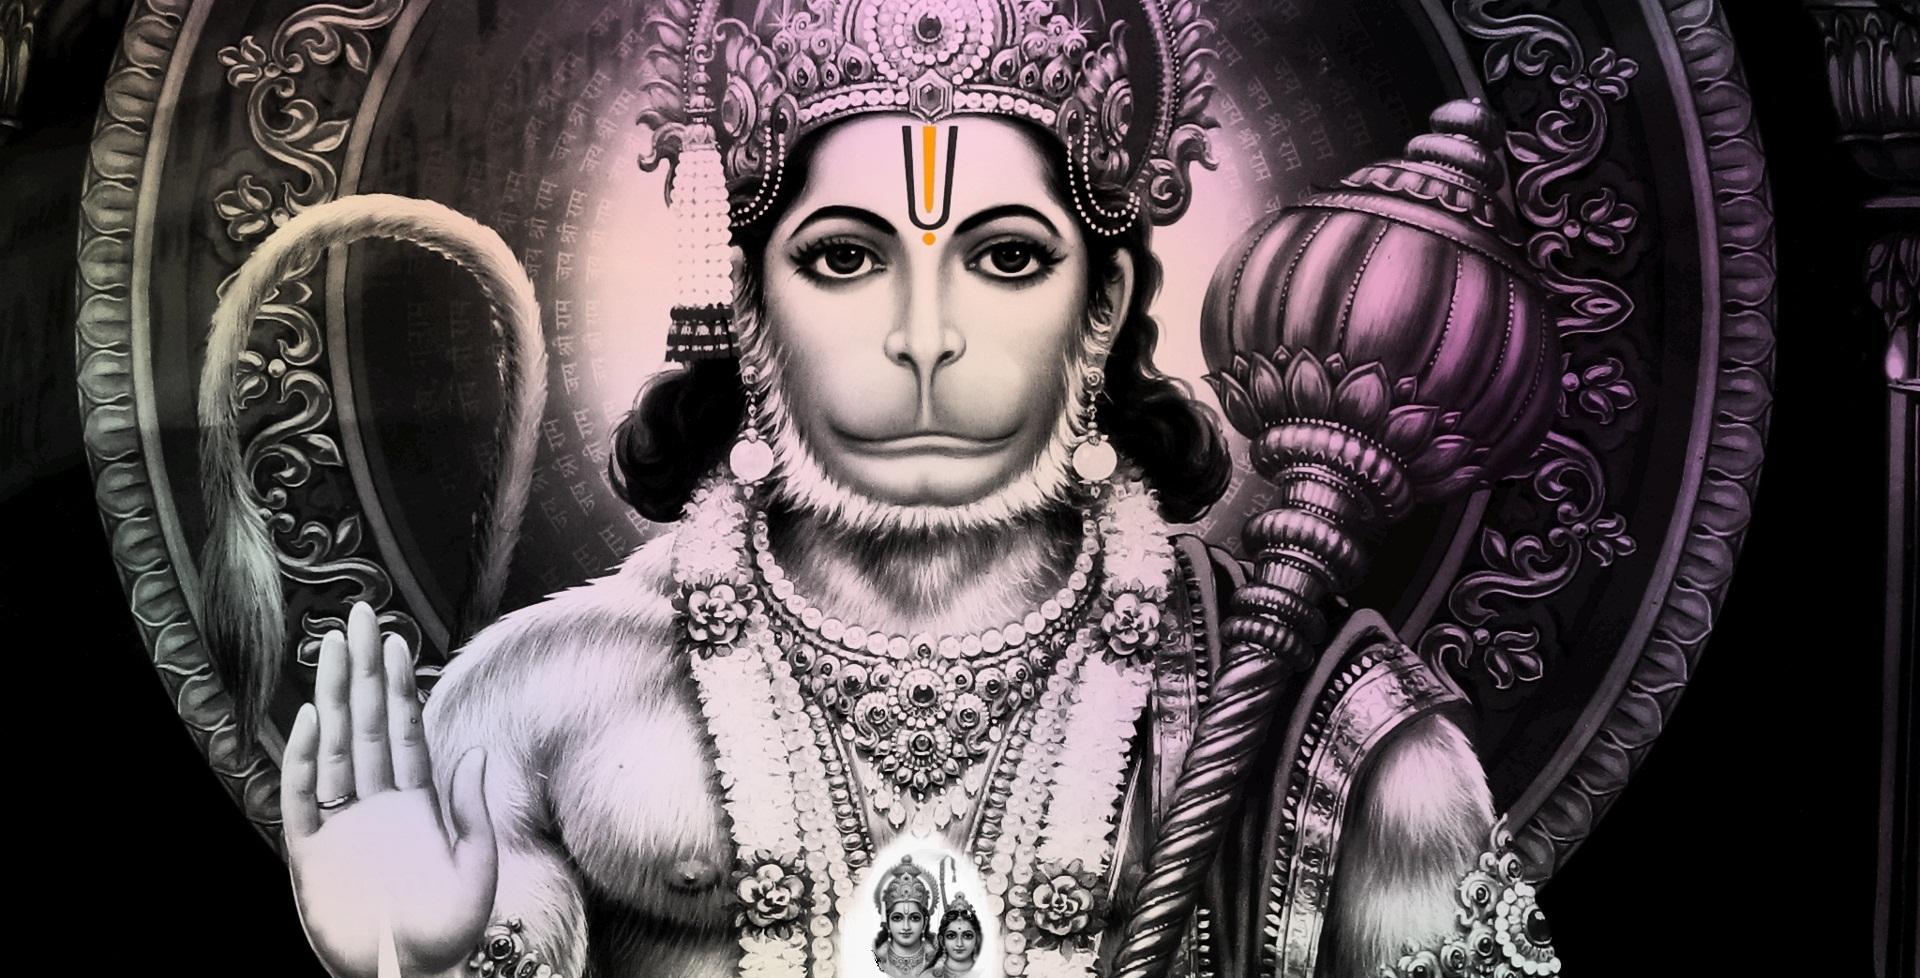 Hanuman Ji Image Full HD Download Free For Mobile Phones 2019